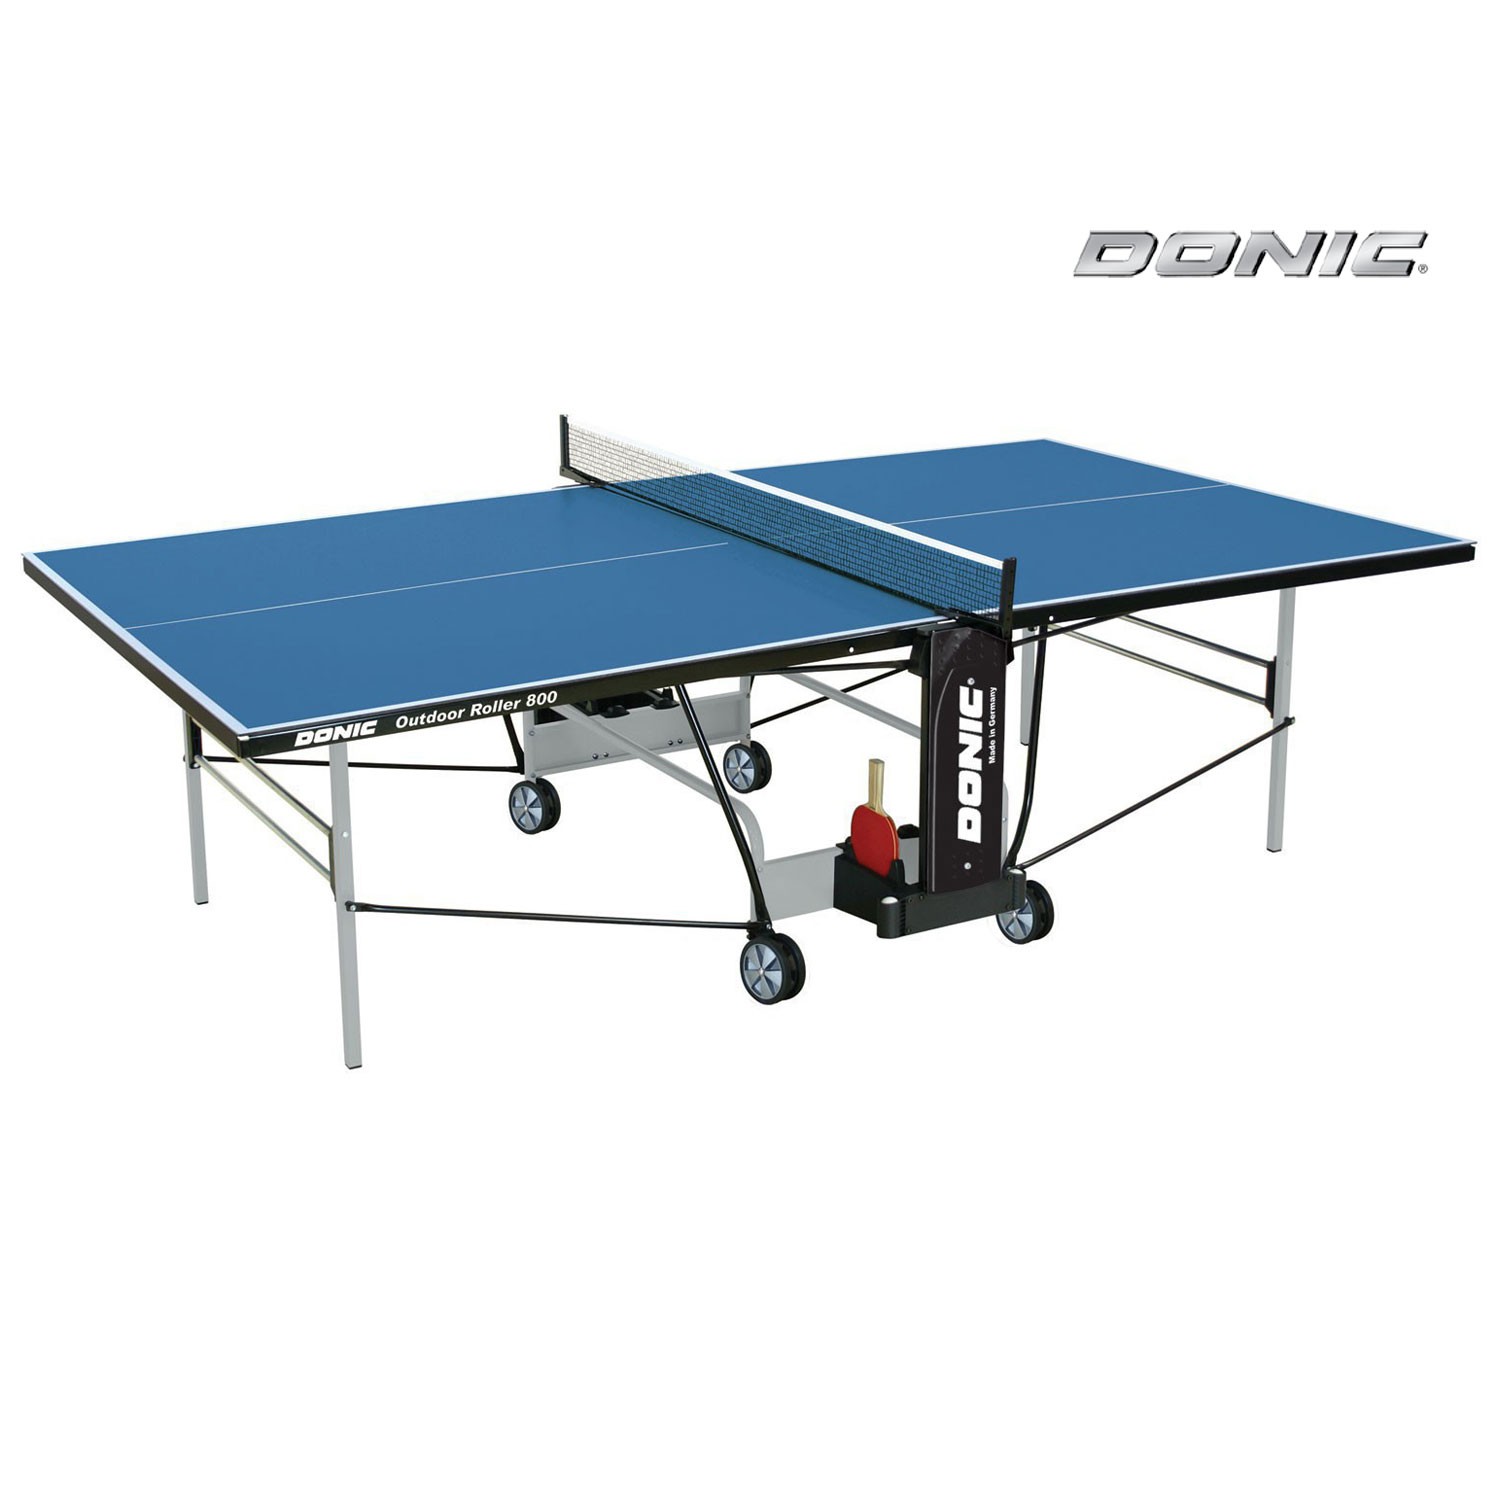 Теннисный стол Donic OUTDOOR ROLLER 800-5 синий